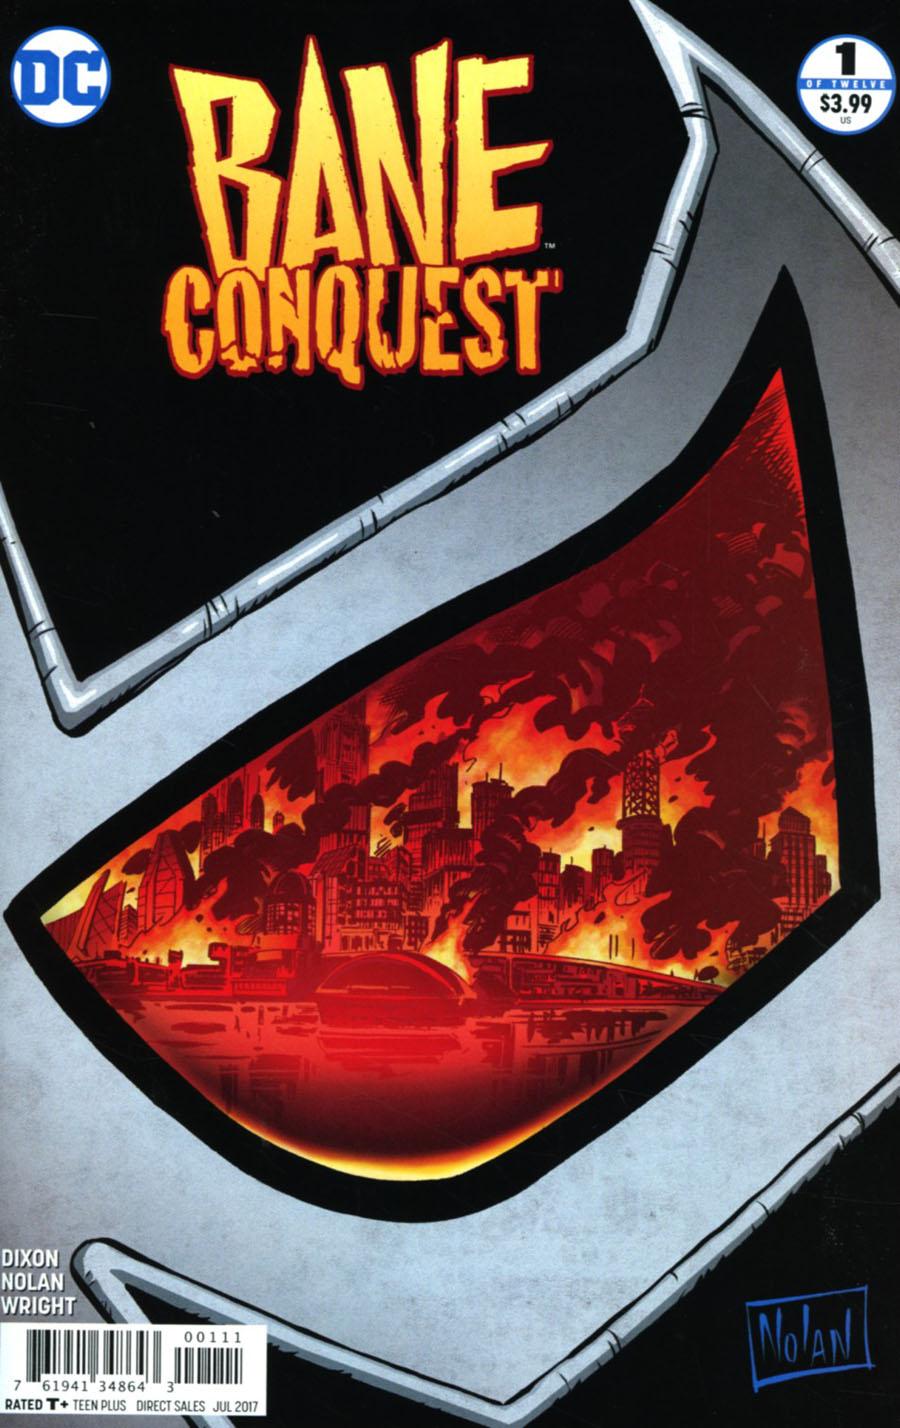 Bane Conquest Vol. 1 #1